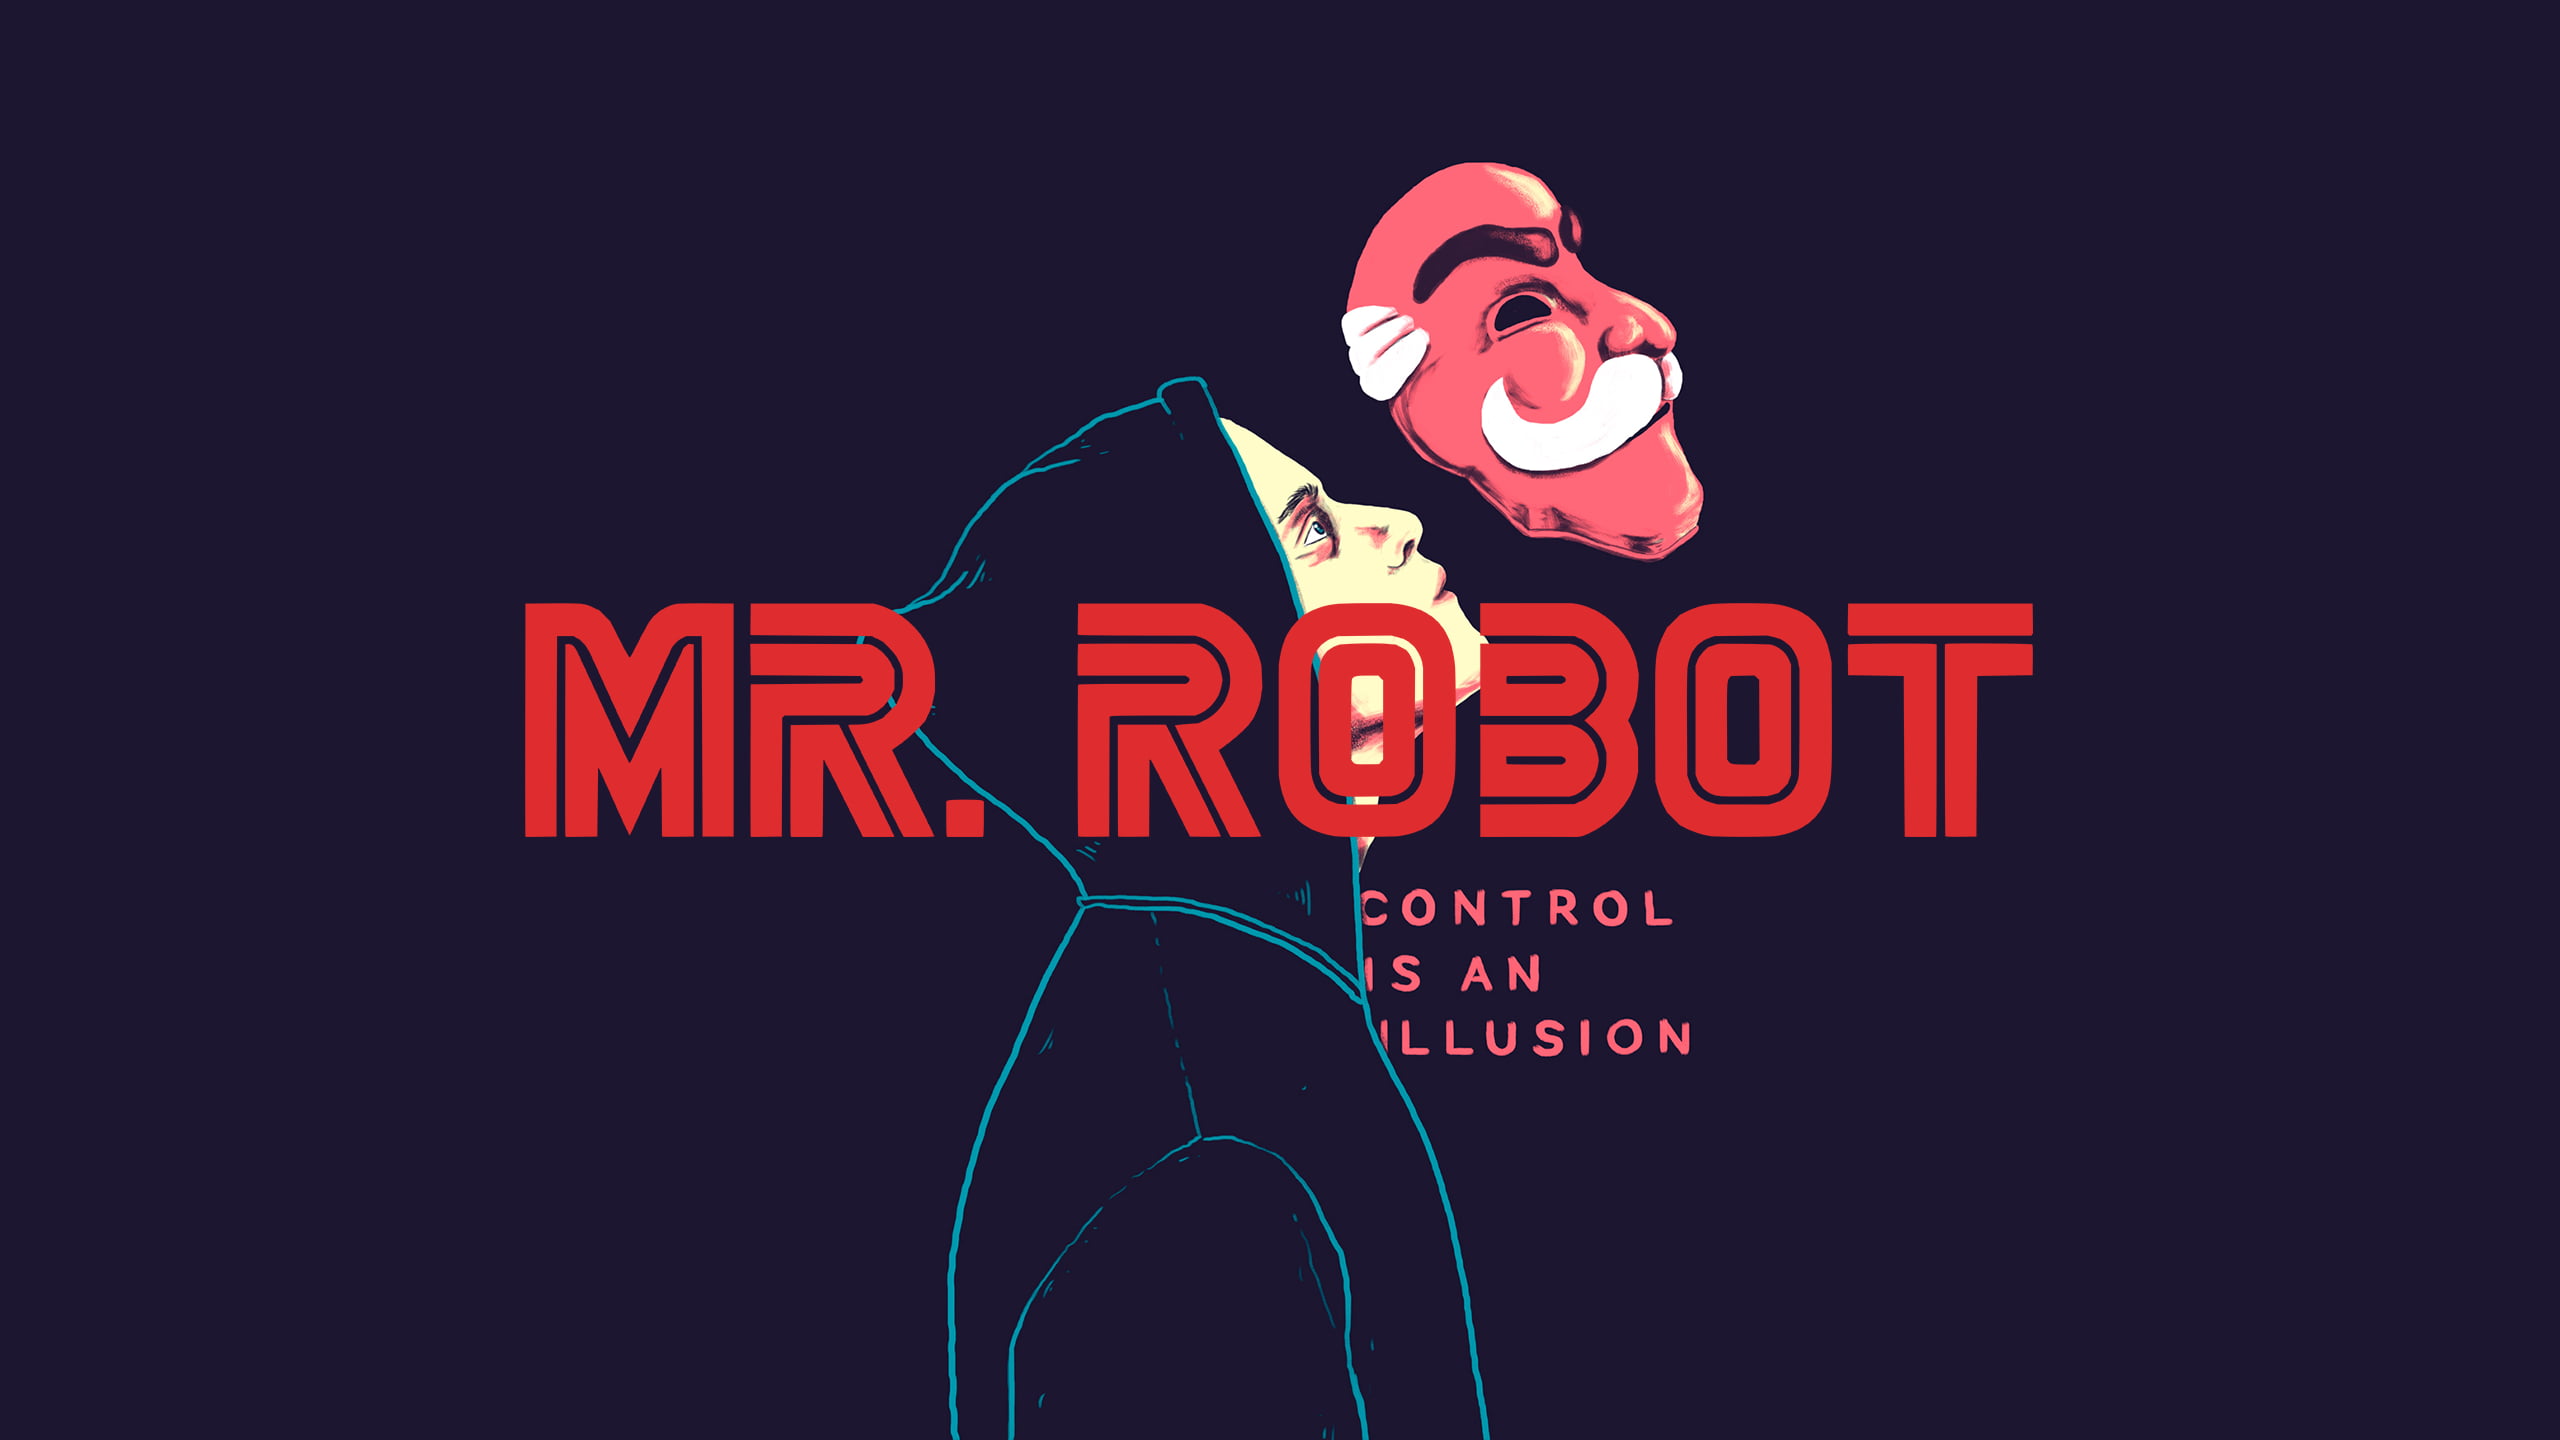 Mr Robot Wallpaper 4k , HD Wallpaper & Backgrounds